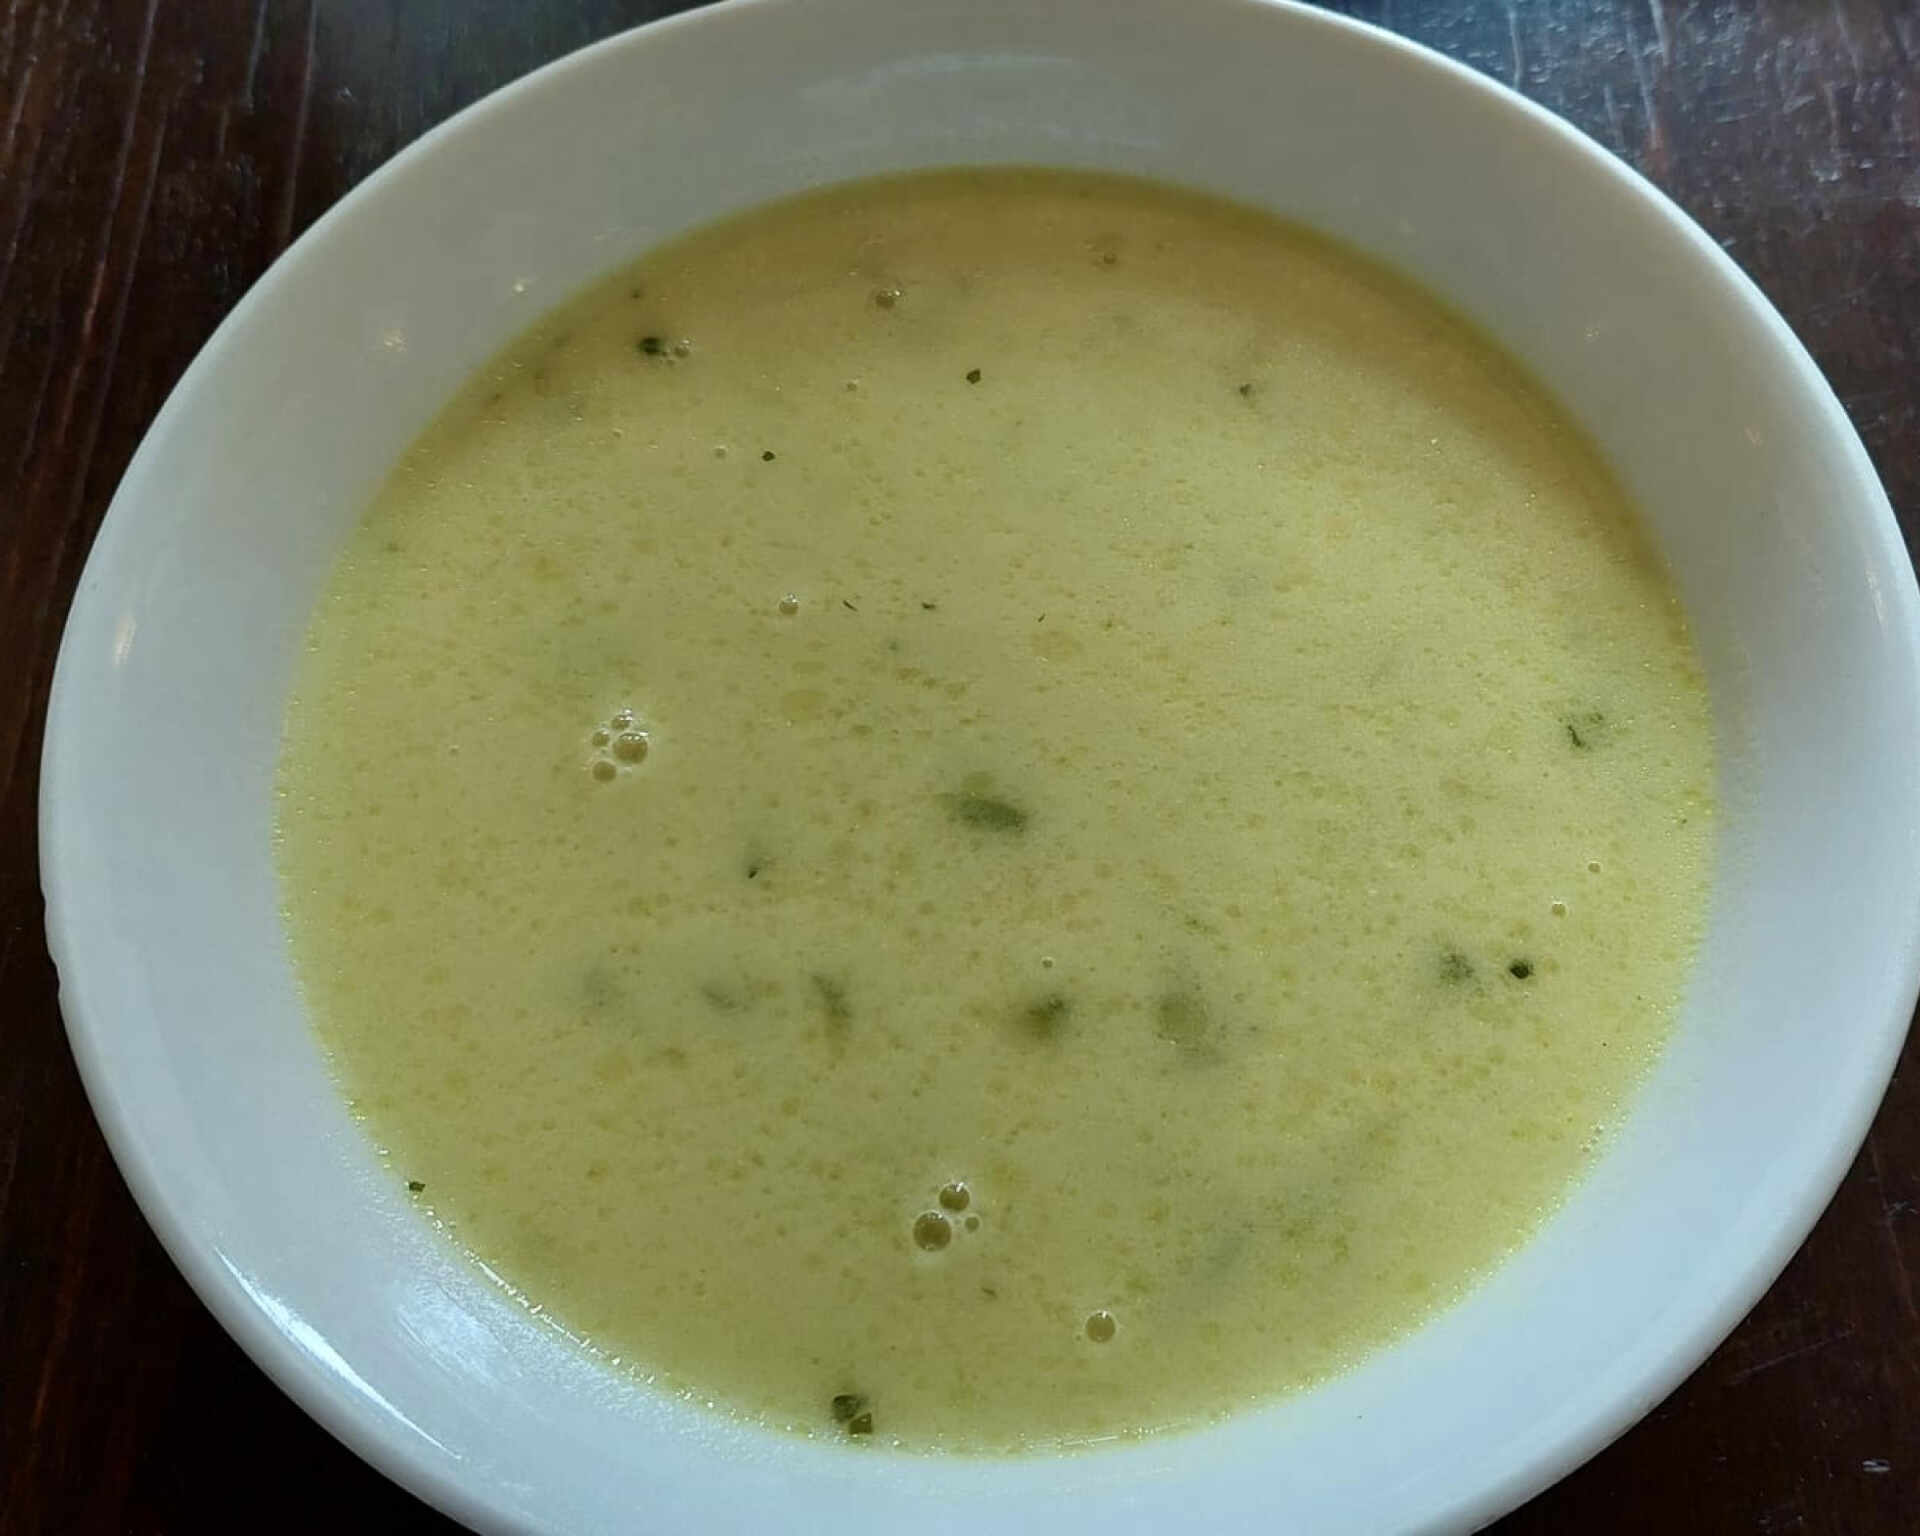 Hotová polievka zo zelenej špargle bez mlieka, smotany či vajec